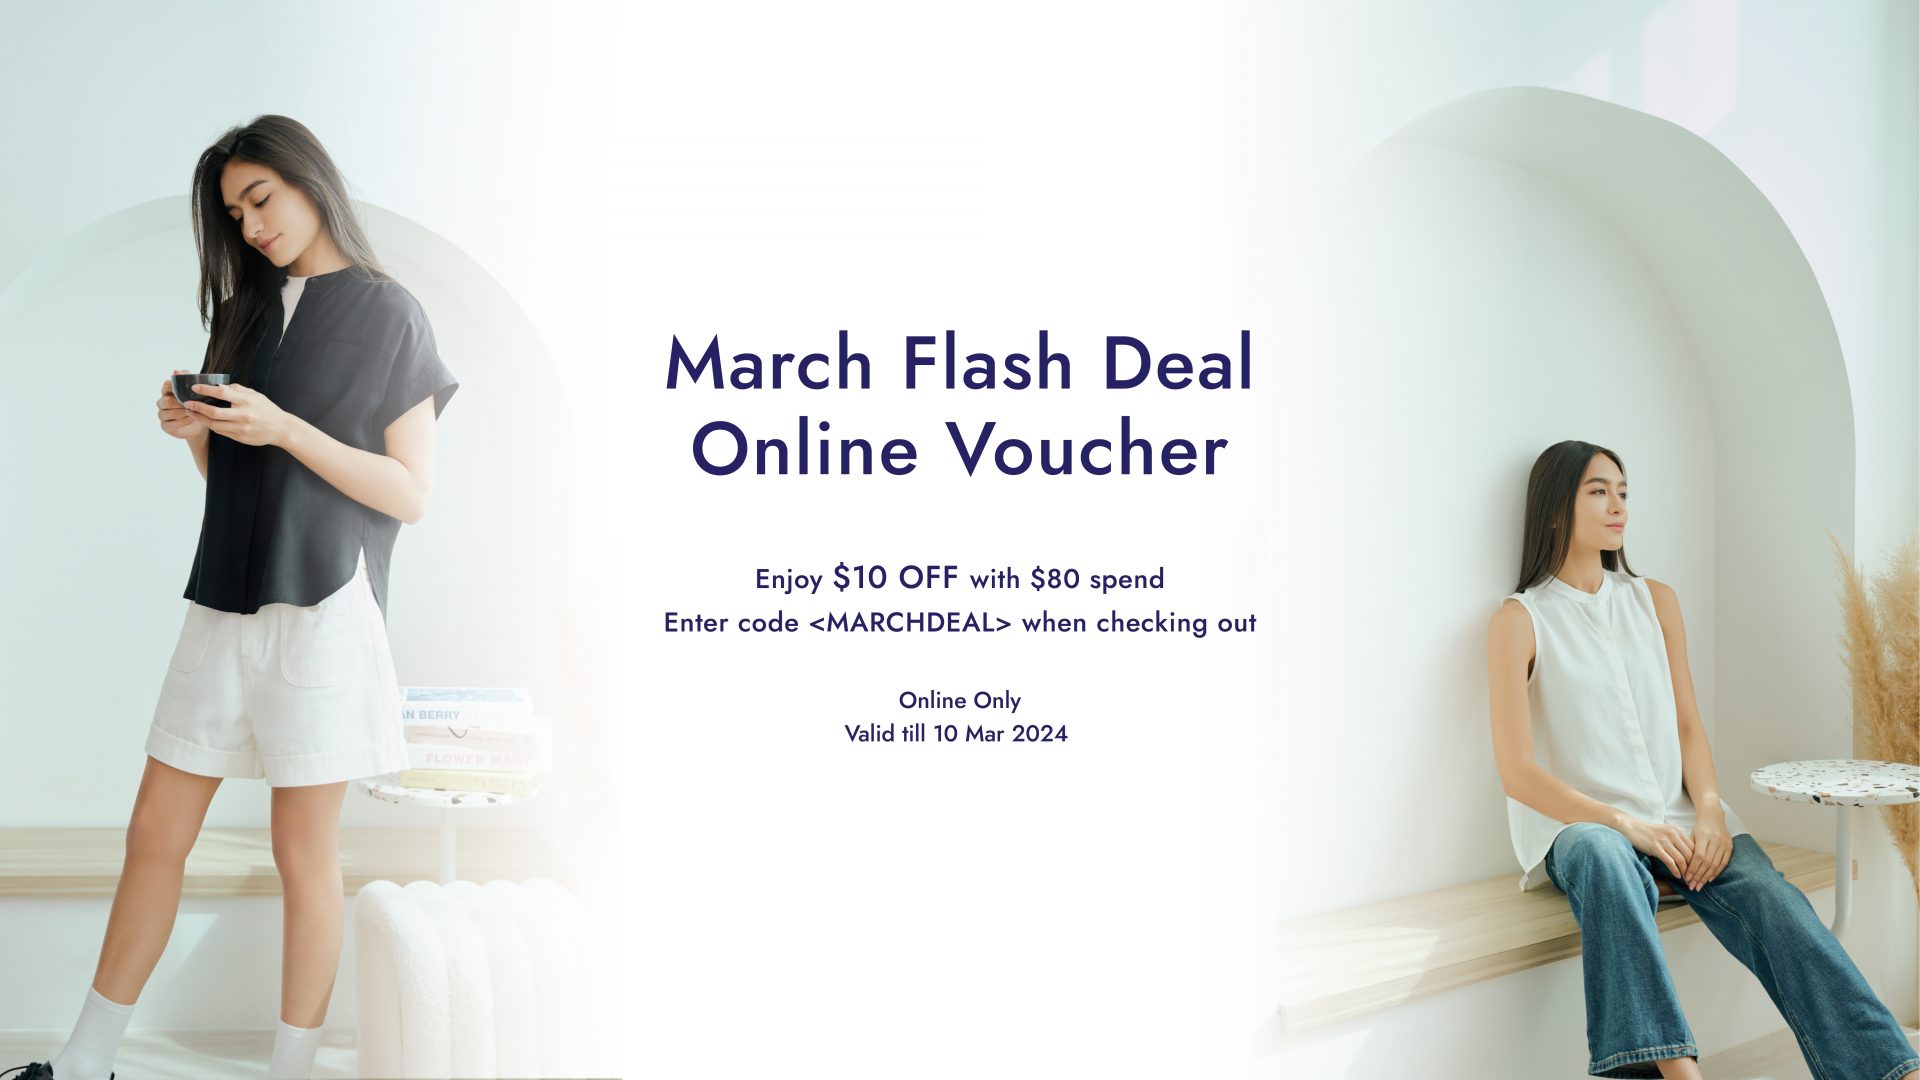 March Flash Deal Online Voucher WEBSITE SLIDER